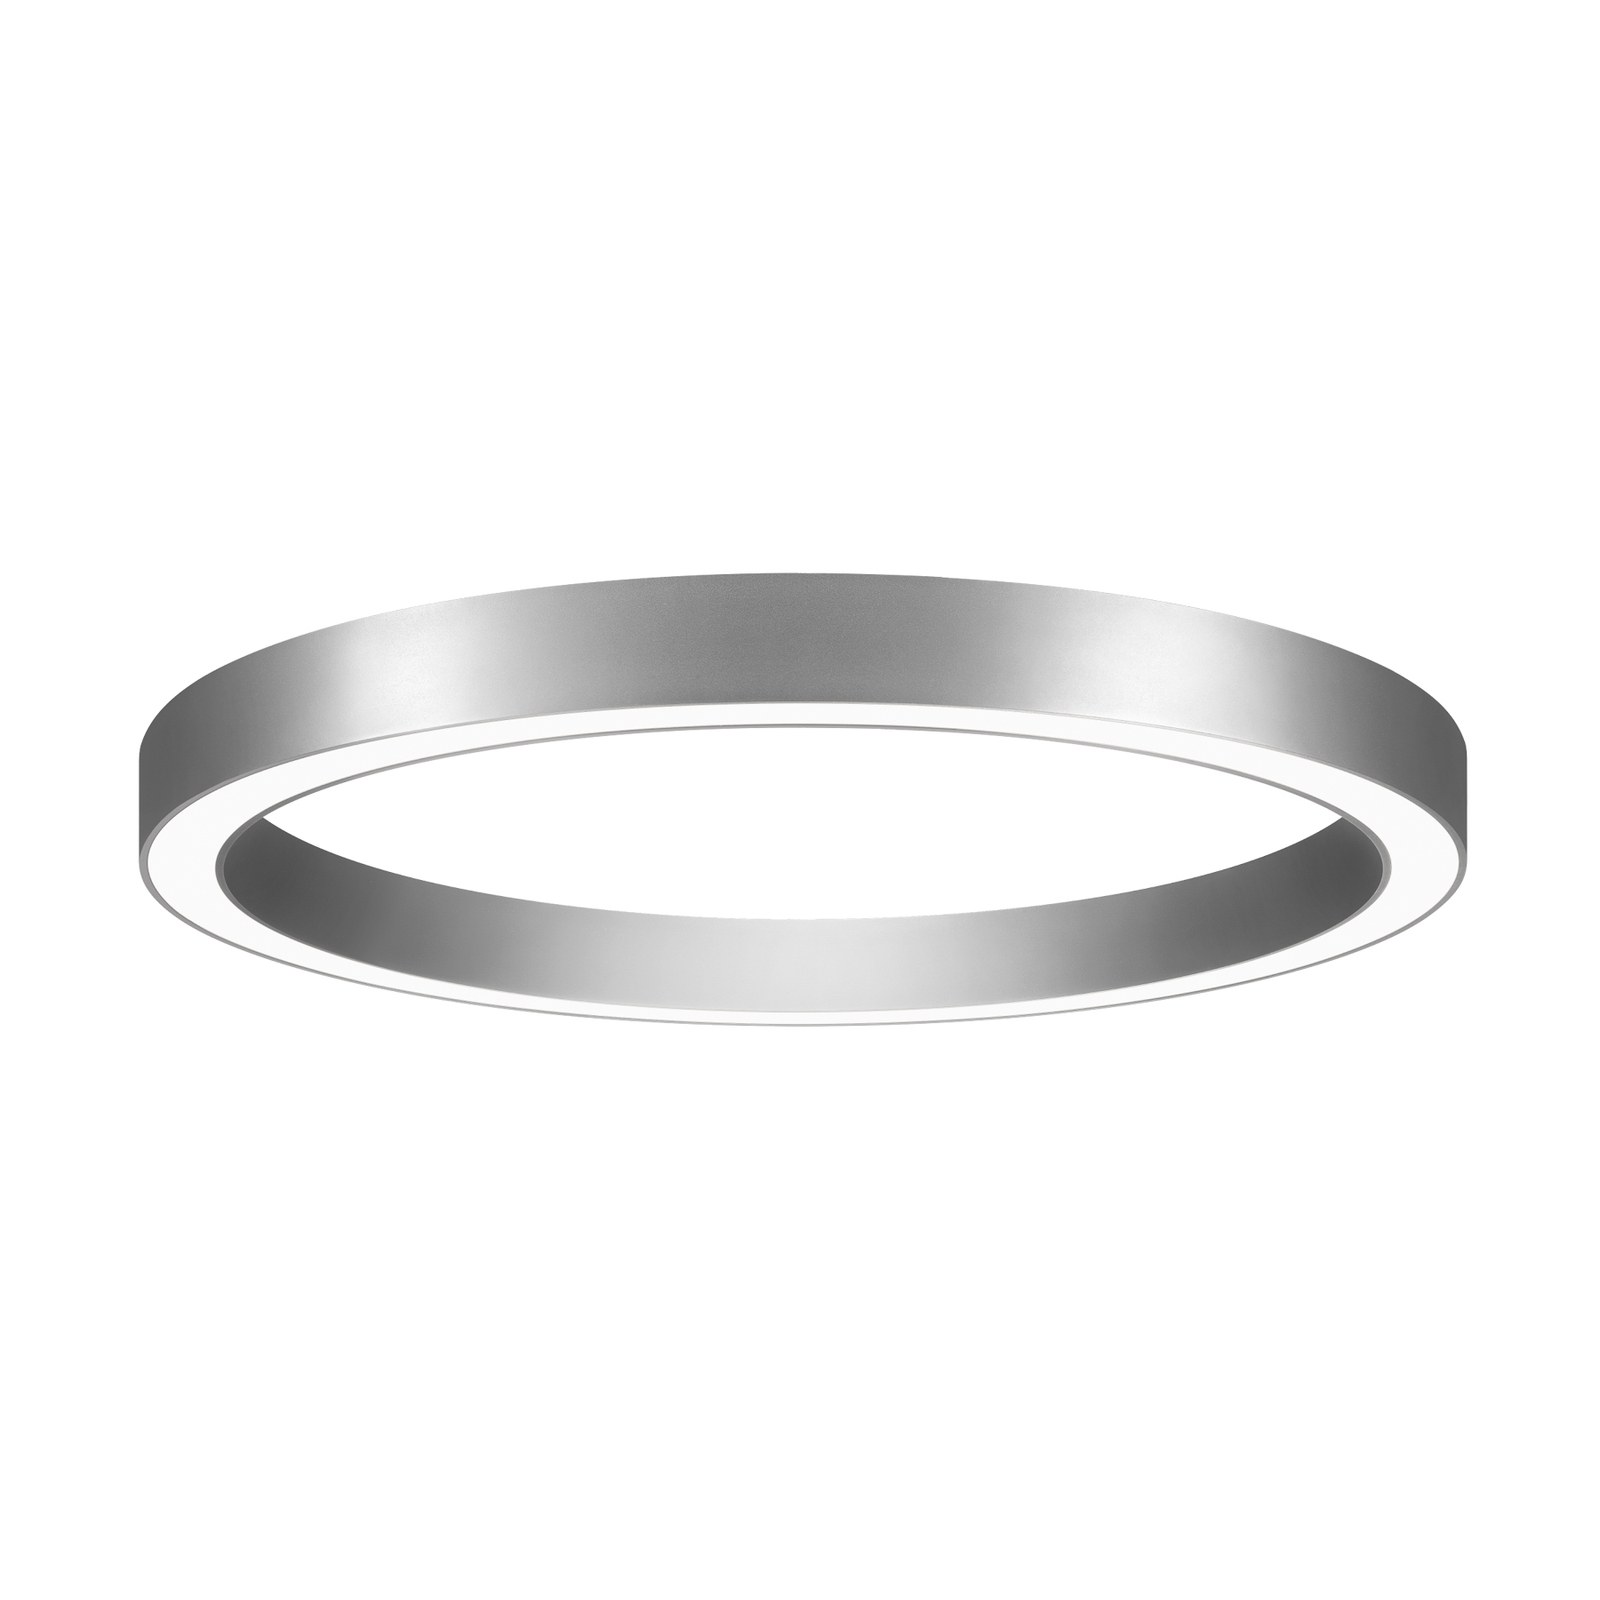 BRUMBERG Biro Circle Ring, Ø 60 cm, Casambi, stříbrná, 840 Kč